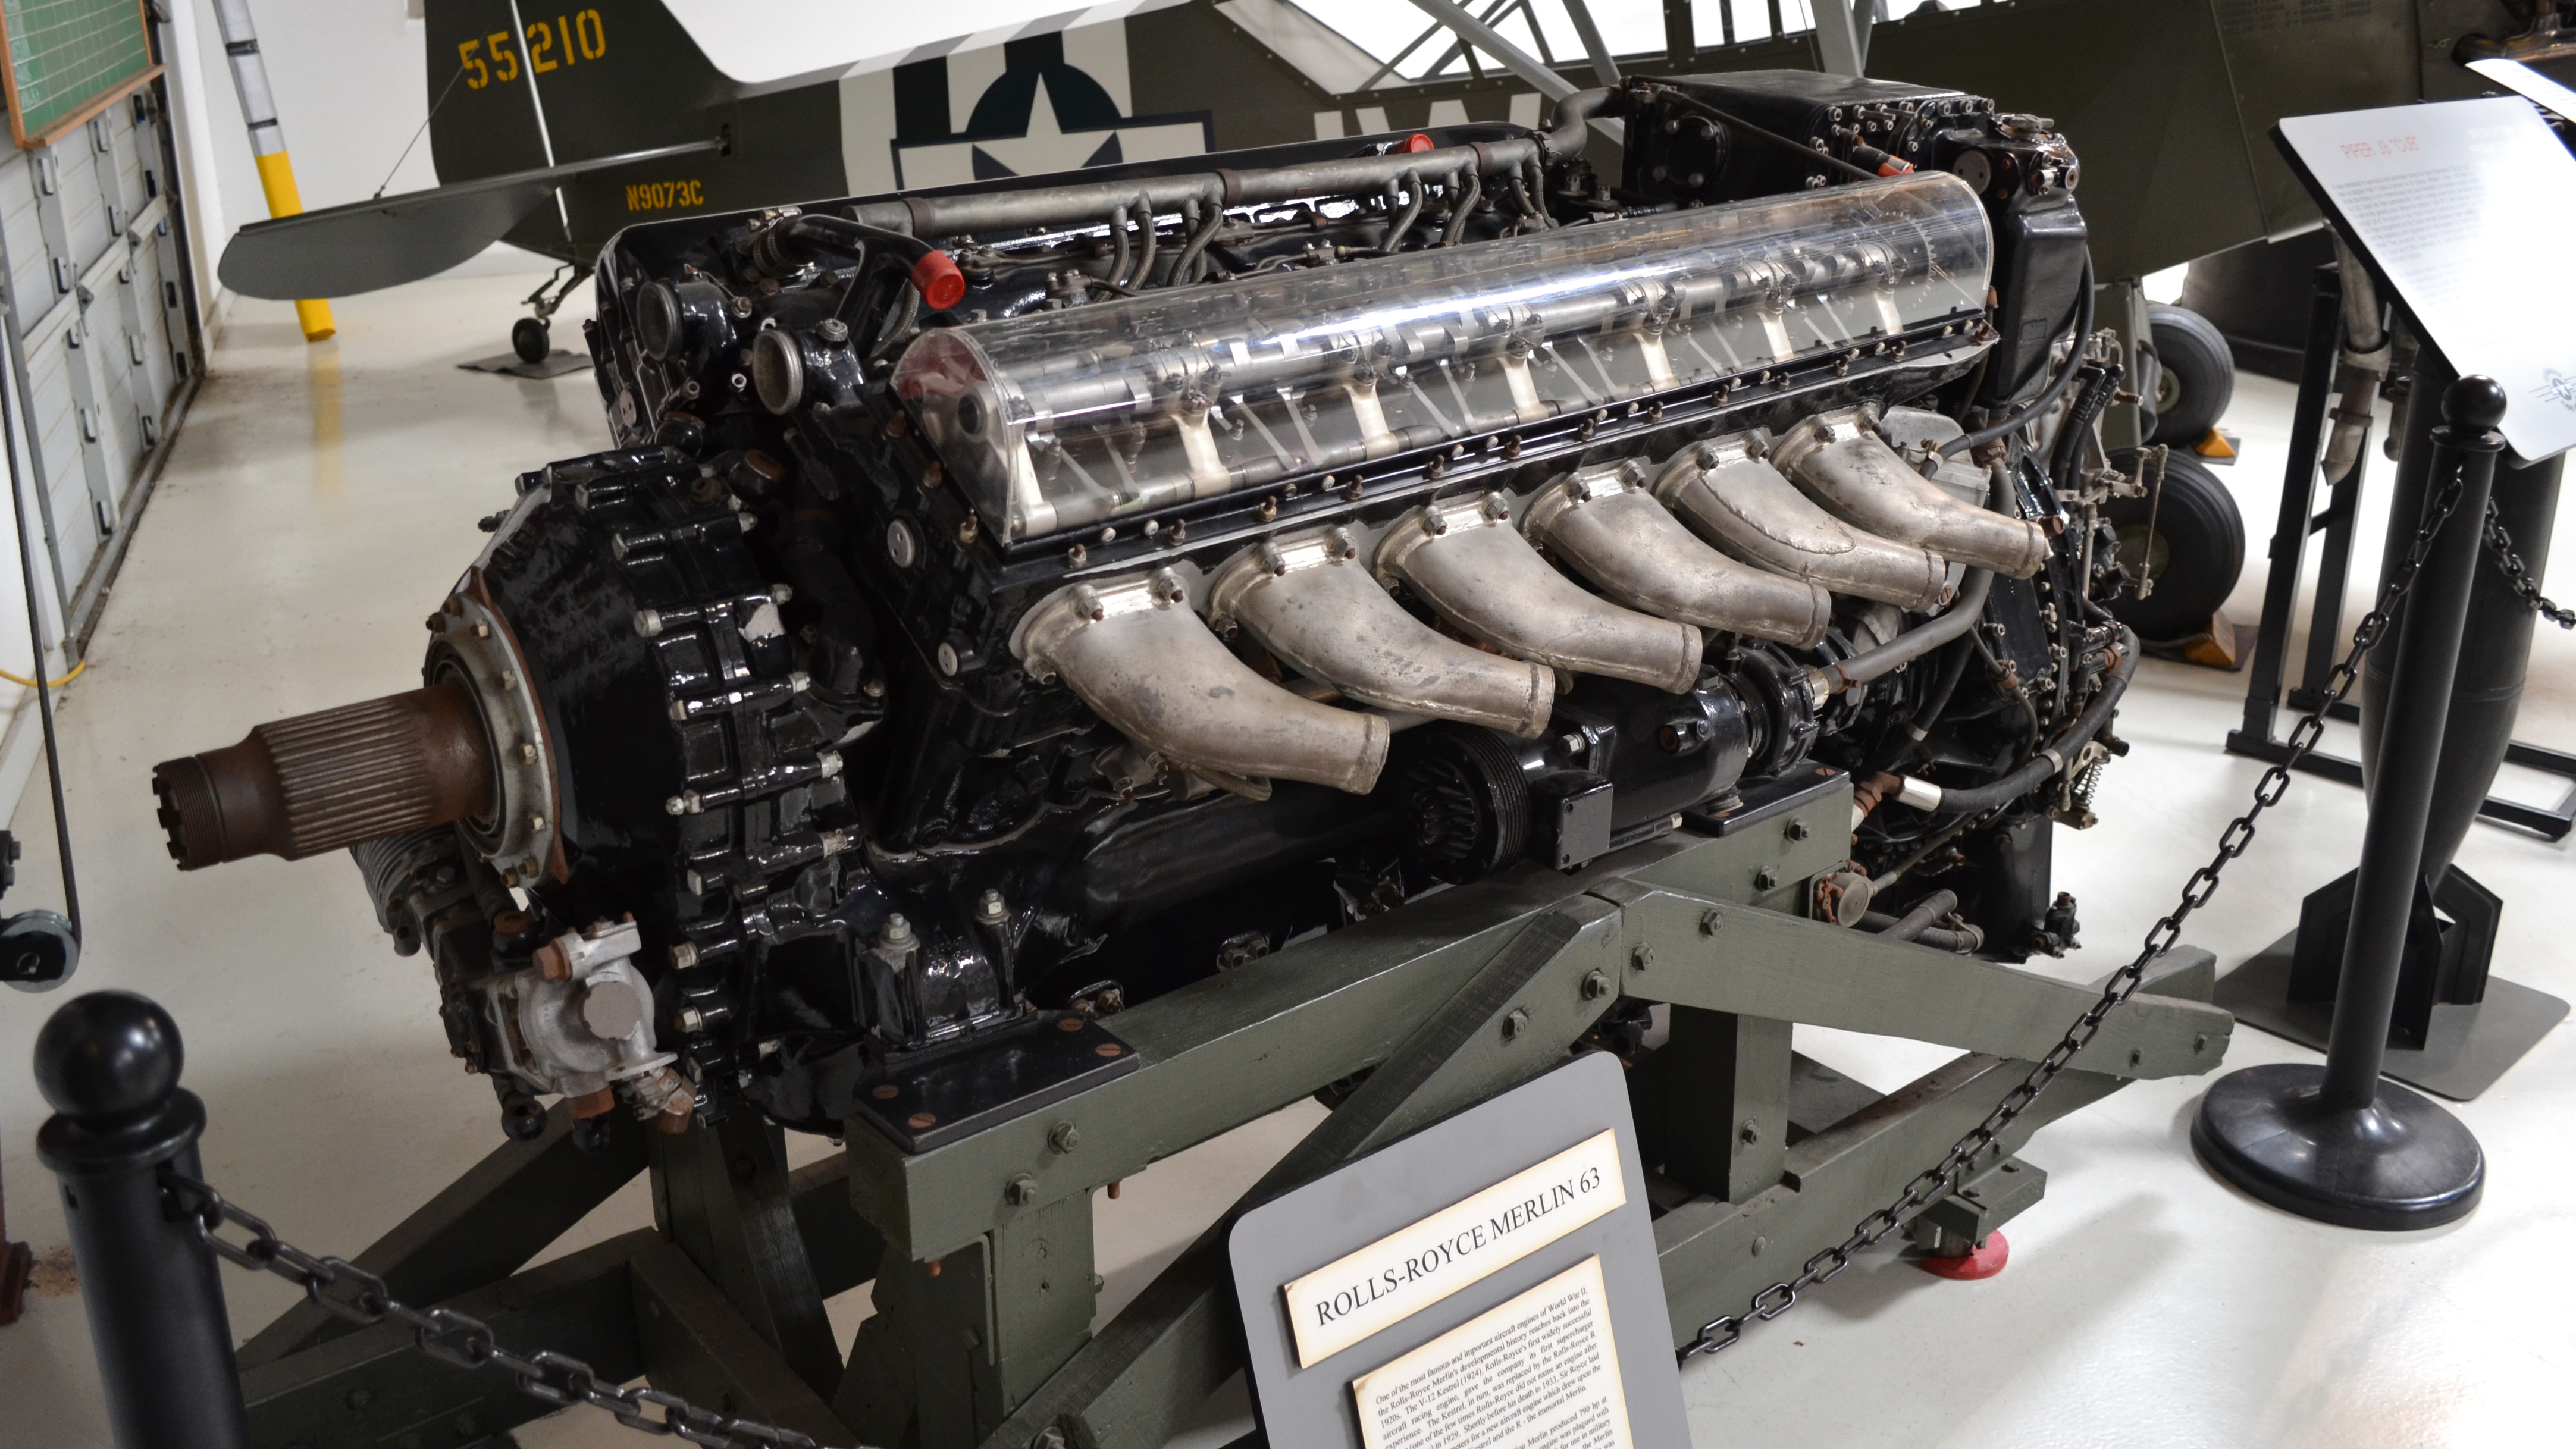 Rolls royce merlin engine for sale